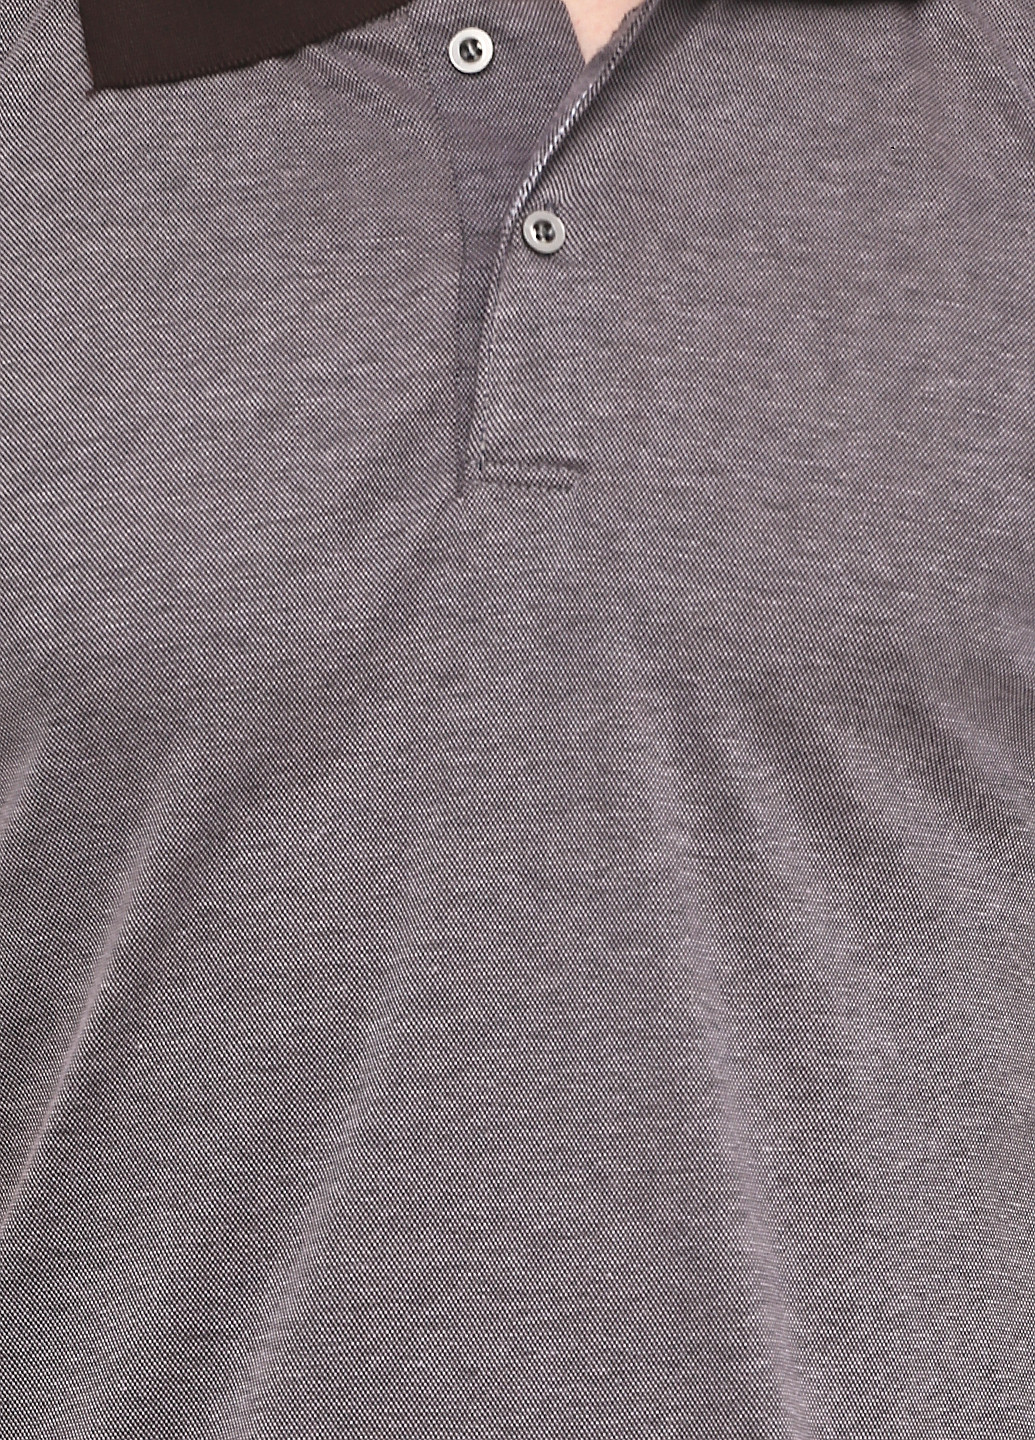 Серо-коричневая футболка-поло для мужчин Chiarotex с геометрическим узором